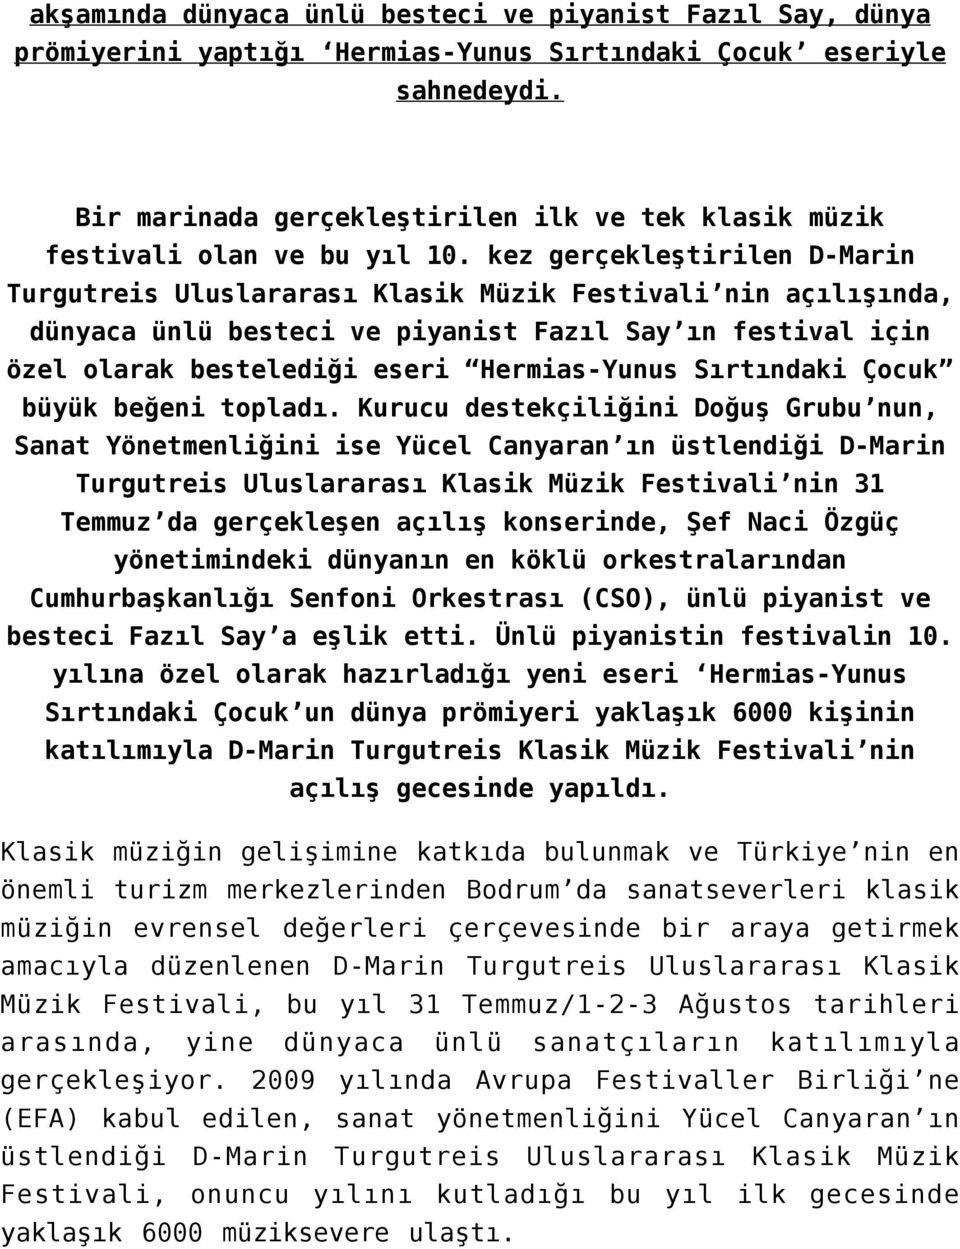 kez gerçekleştirilen D-Marin Turgutreis Uluslararası Klasik Müzik Festivali nin açılışında, dünyaca ünlü besteci ve piyanist Fazıl Say ın festival için özel olarak bestelediği eseri Hermias-Yunus